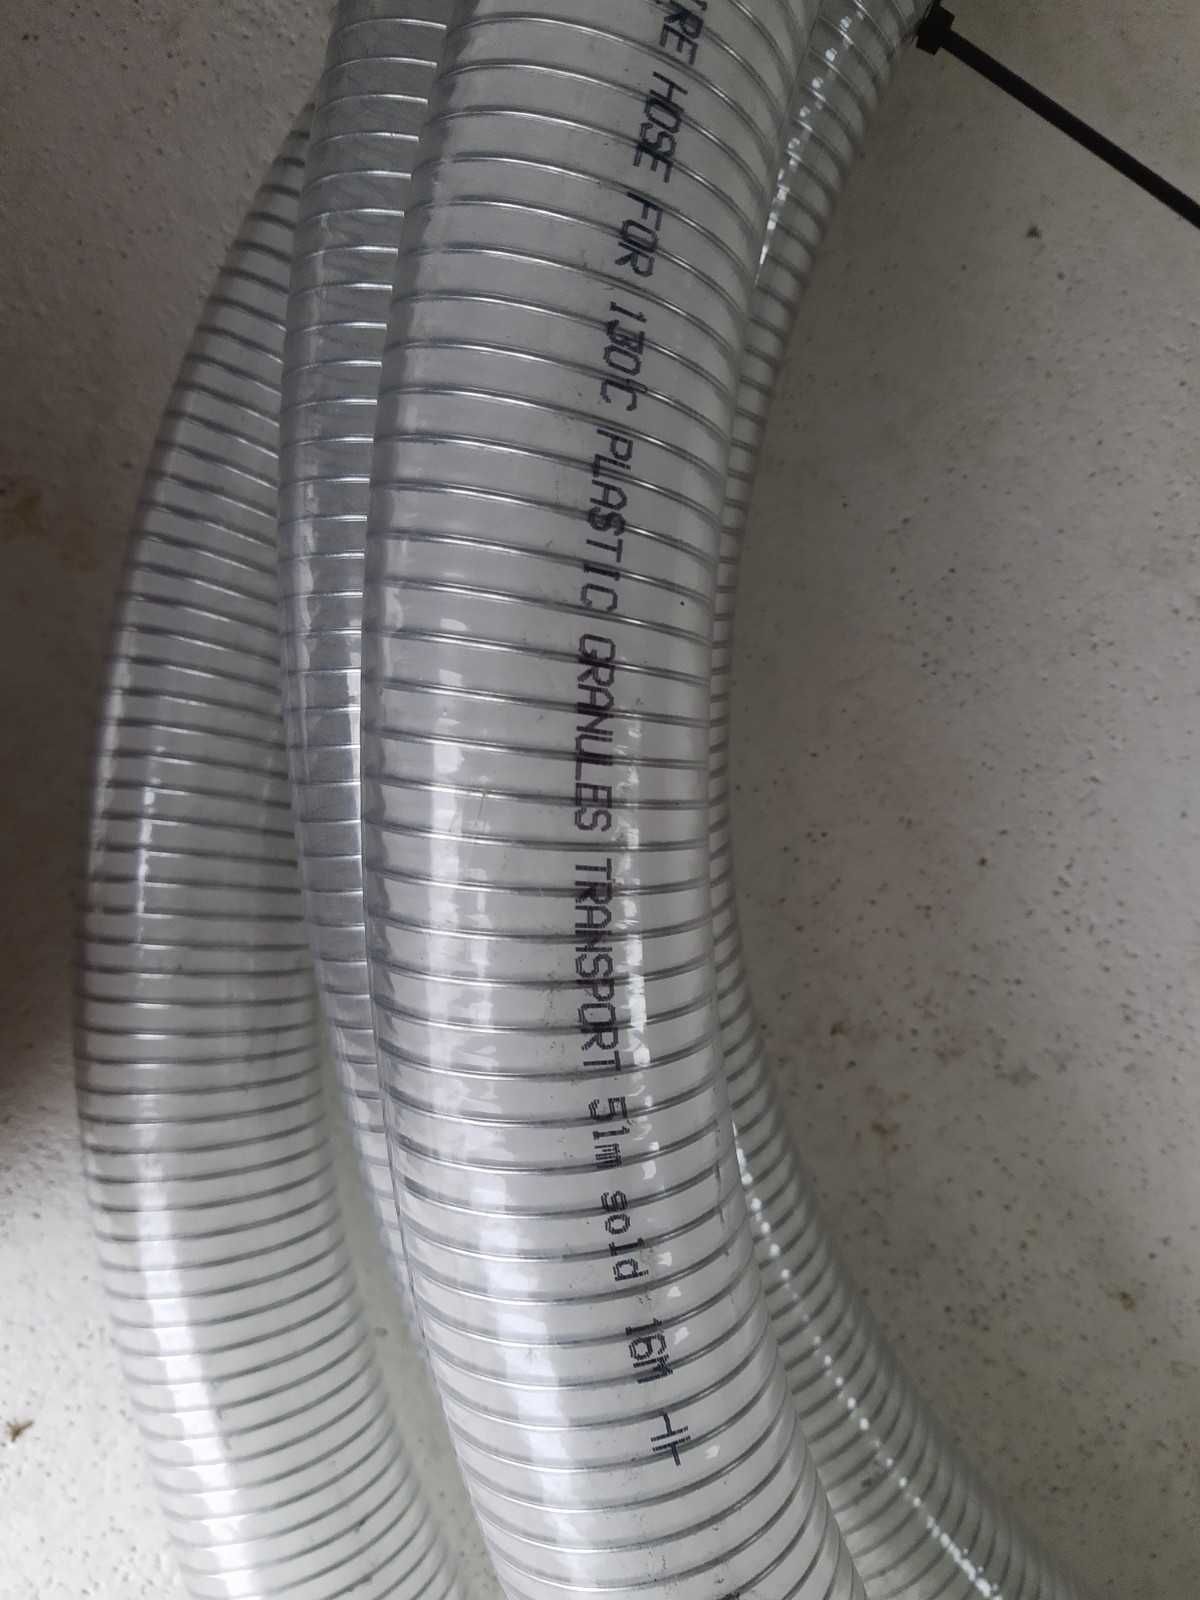 Rura wąż zbrojony, spiro, odciągowy, 50 mm, PVC/PCV, długość 10 mb.